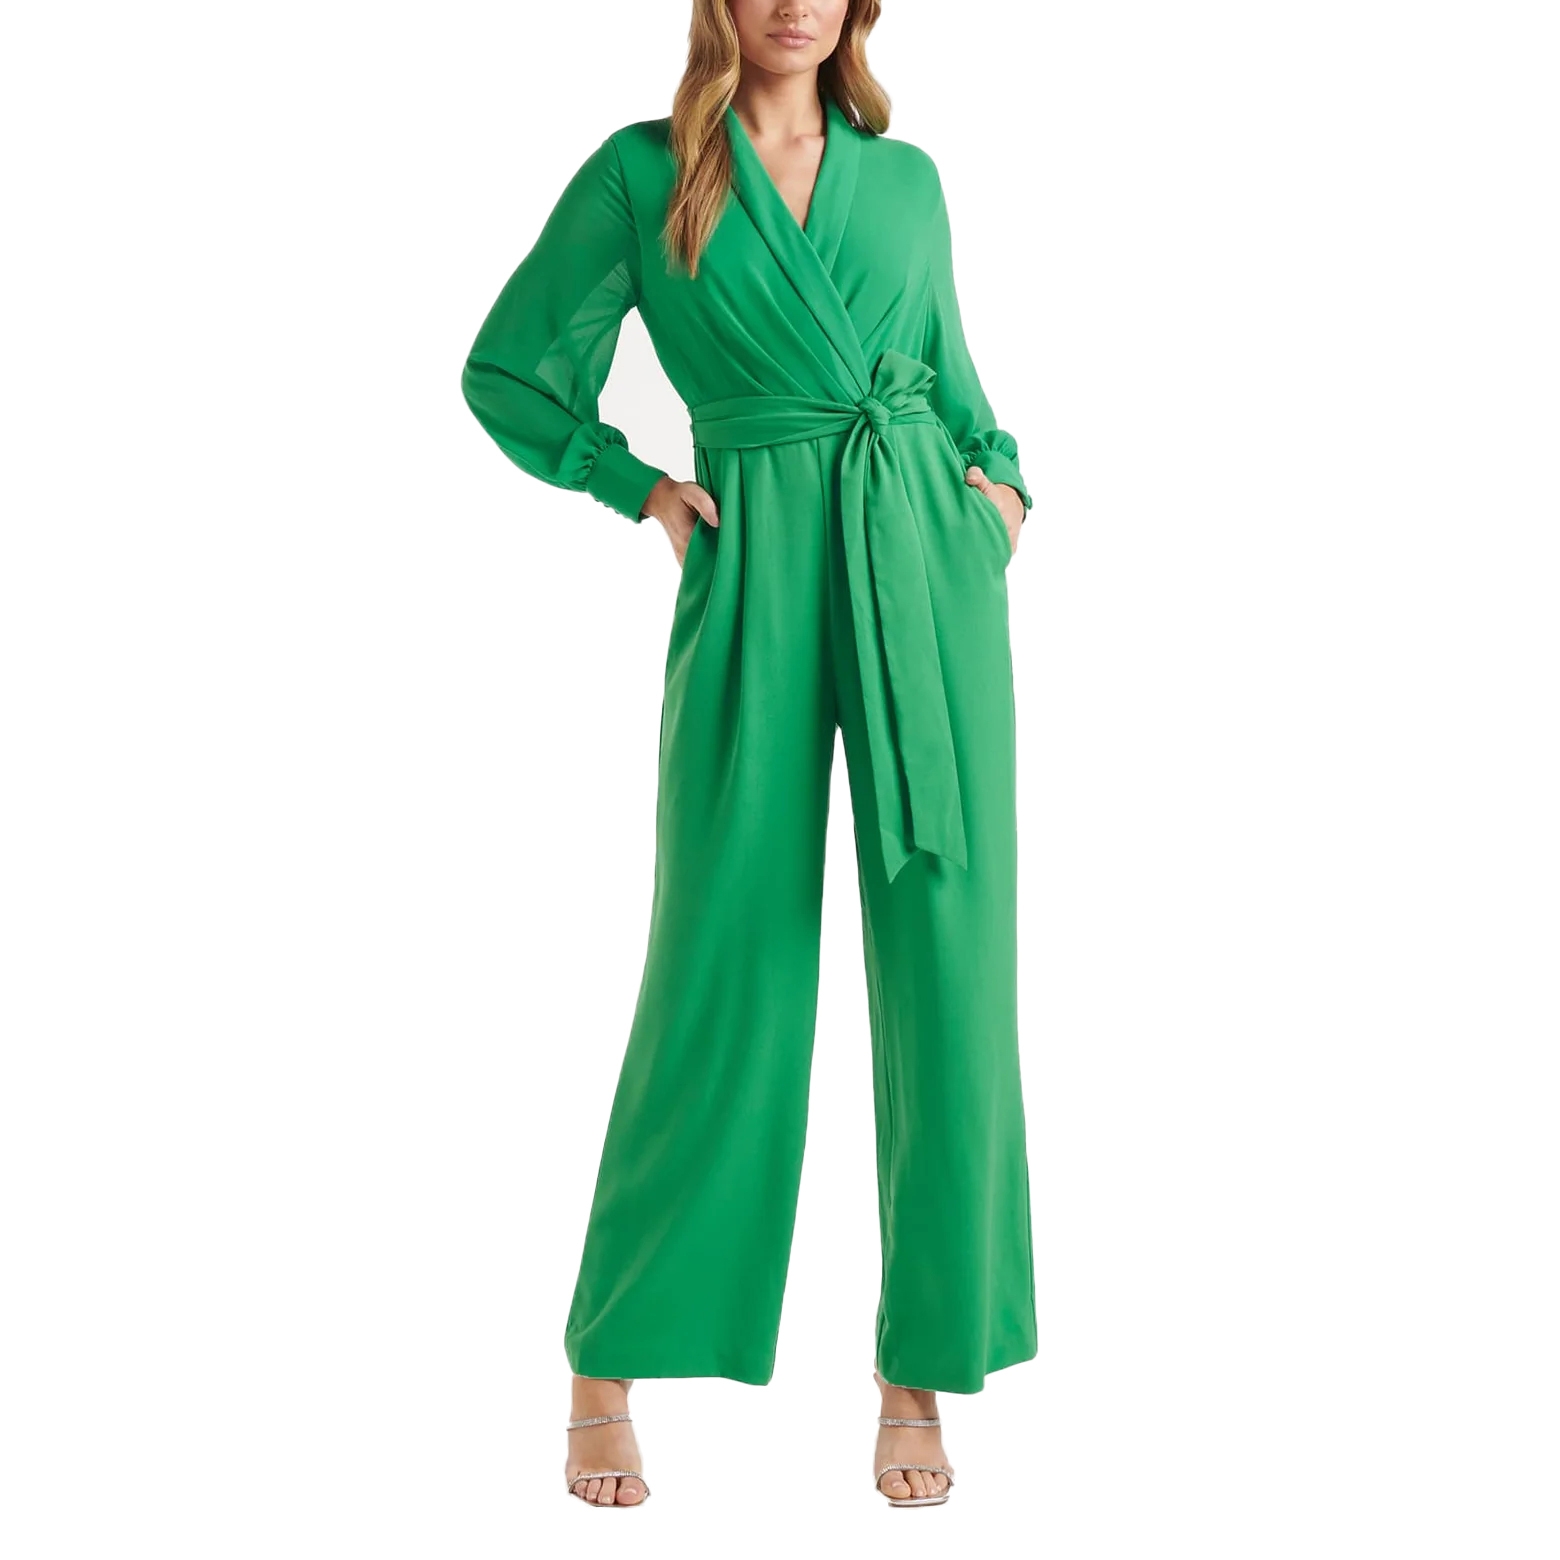 Green Plus Size Jumpsuit One Piece Elegant Lady